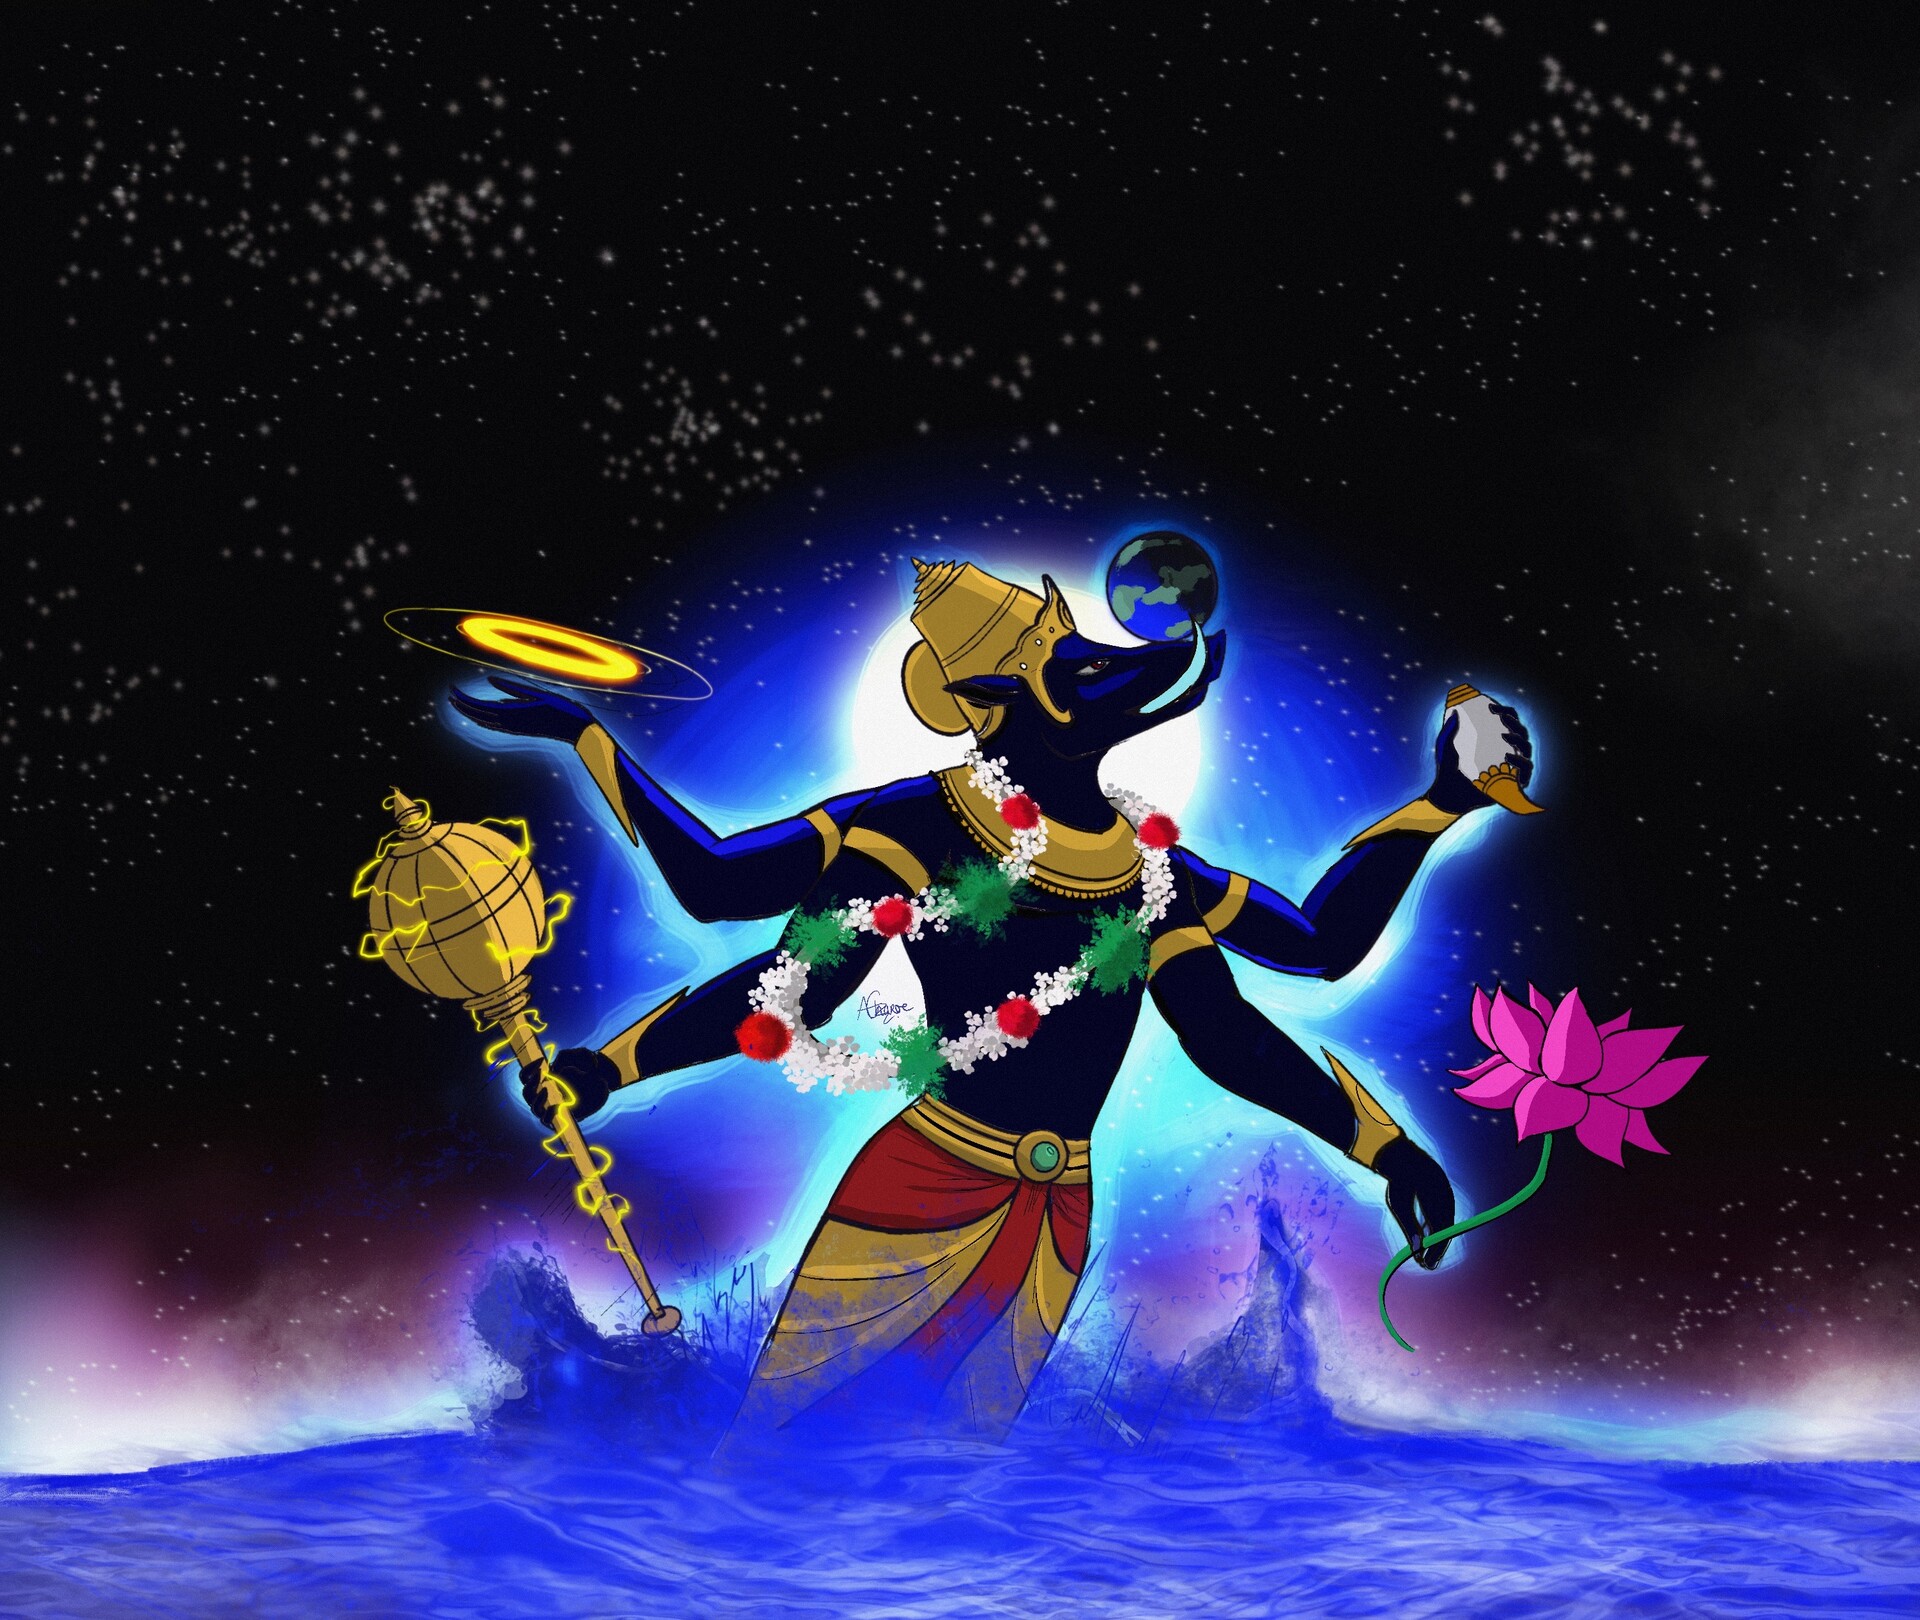 ArtStation - Varaha The Boar Avatar of Vishnu